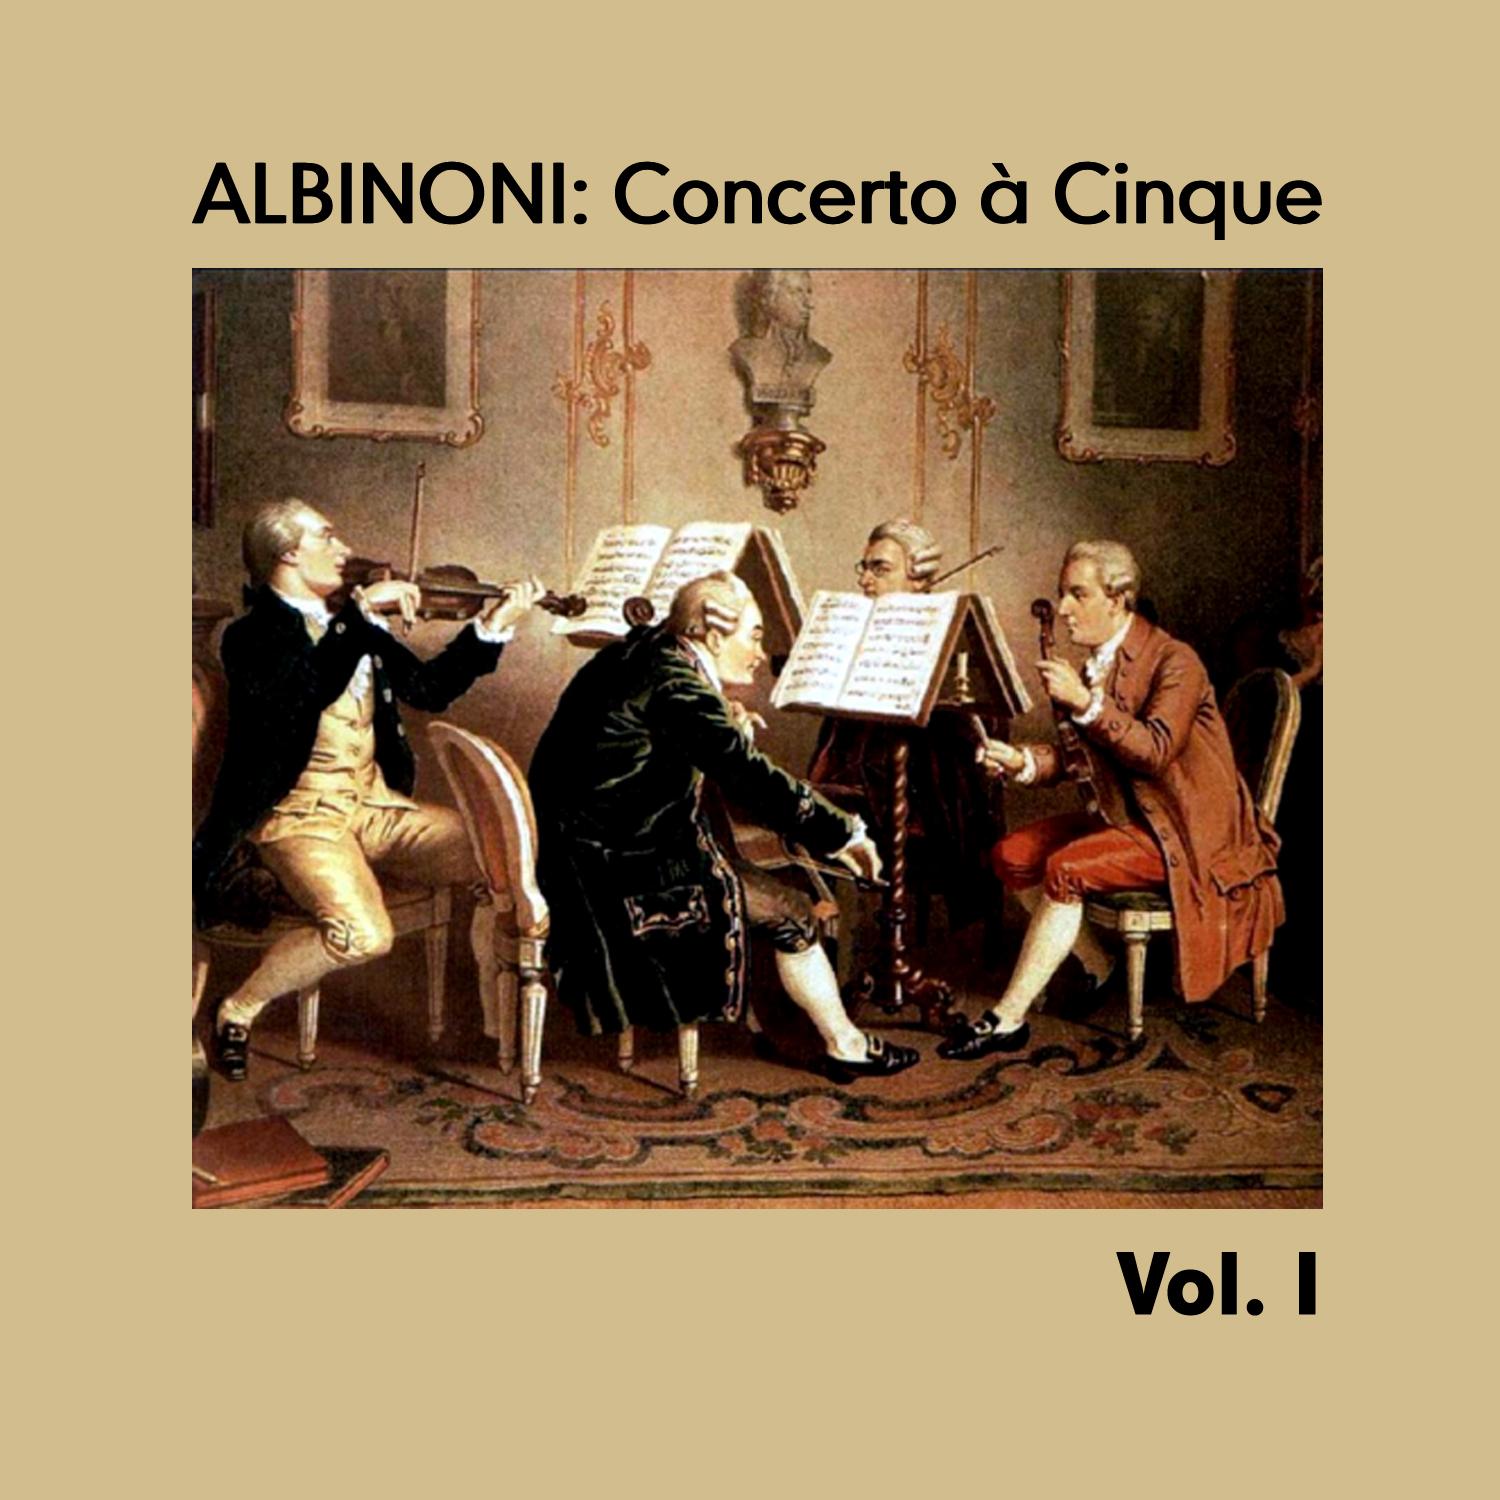 Albinoni: Concerto à Cinque, Vol. I